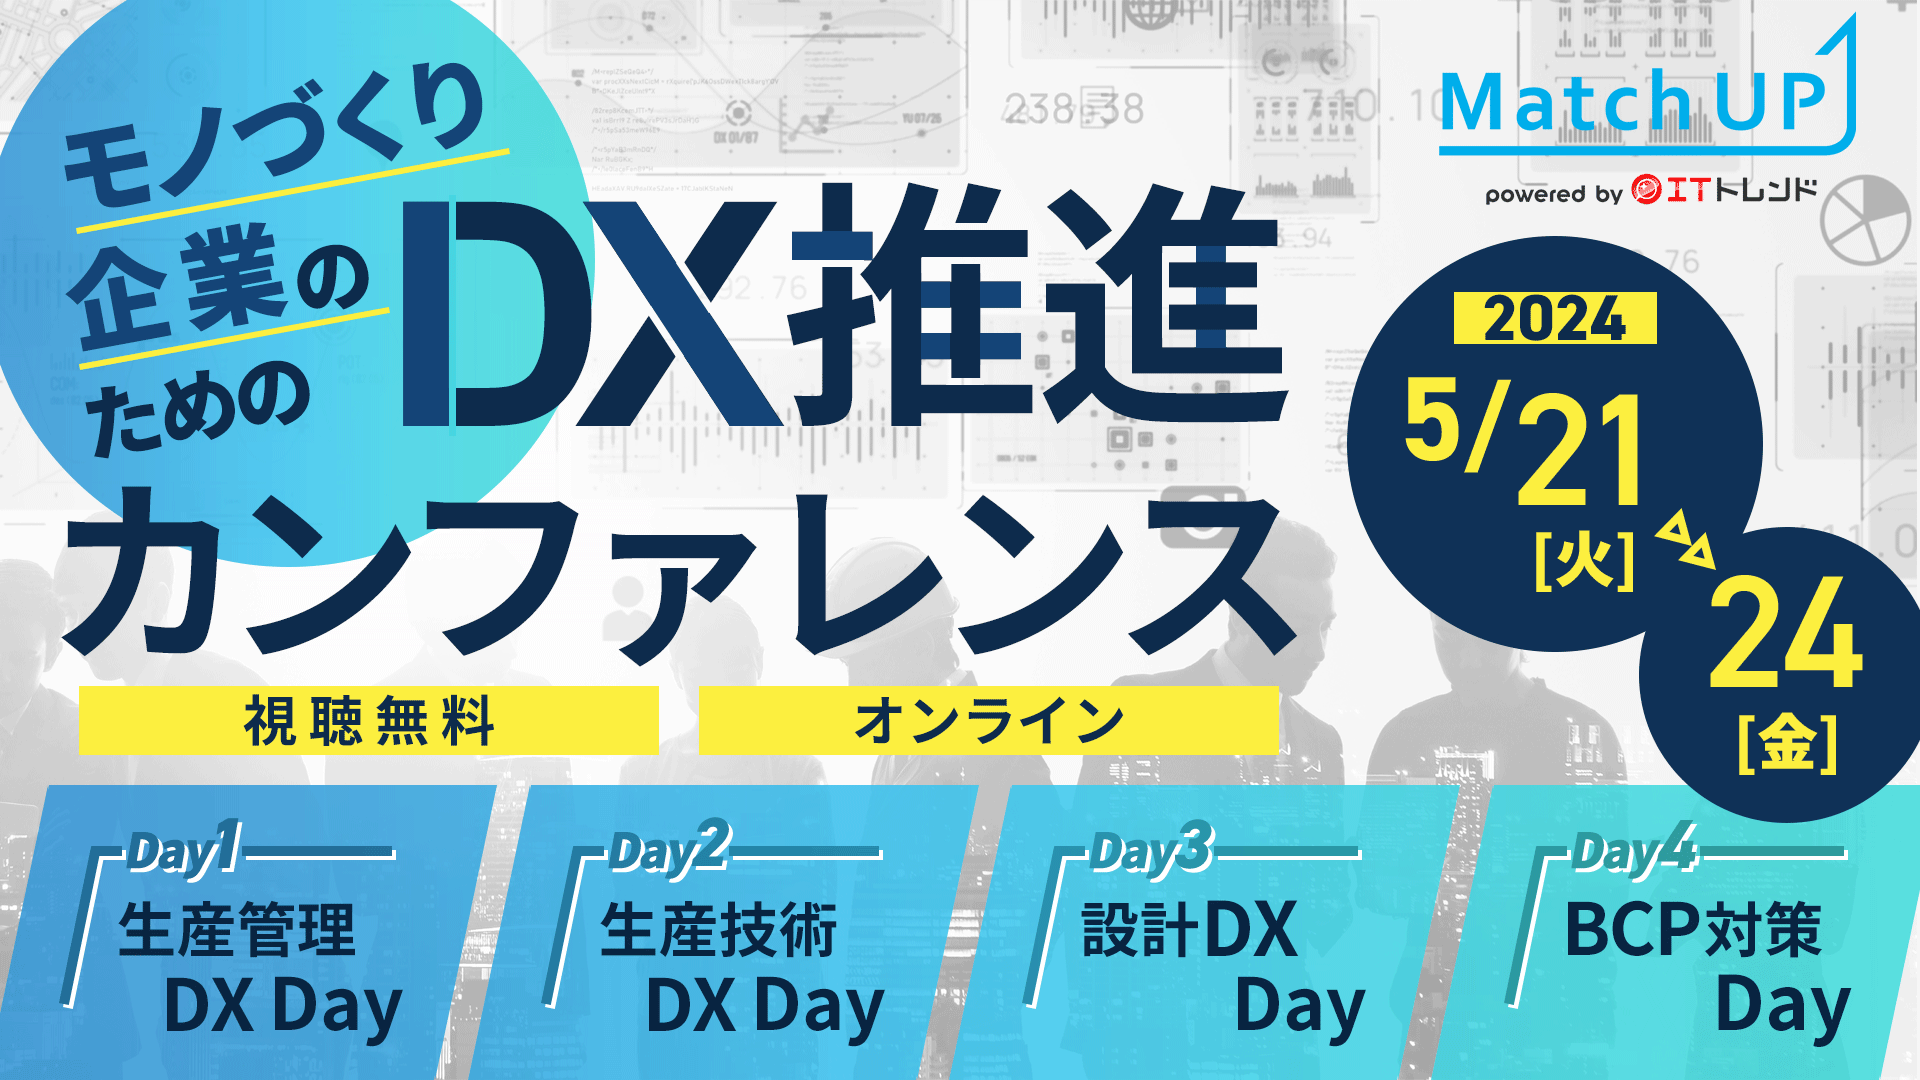 【5月23日(木) オンラインカンファレンス】モノづくり企業のためのDX推進Week ～Match UP共催カンファレンス～